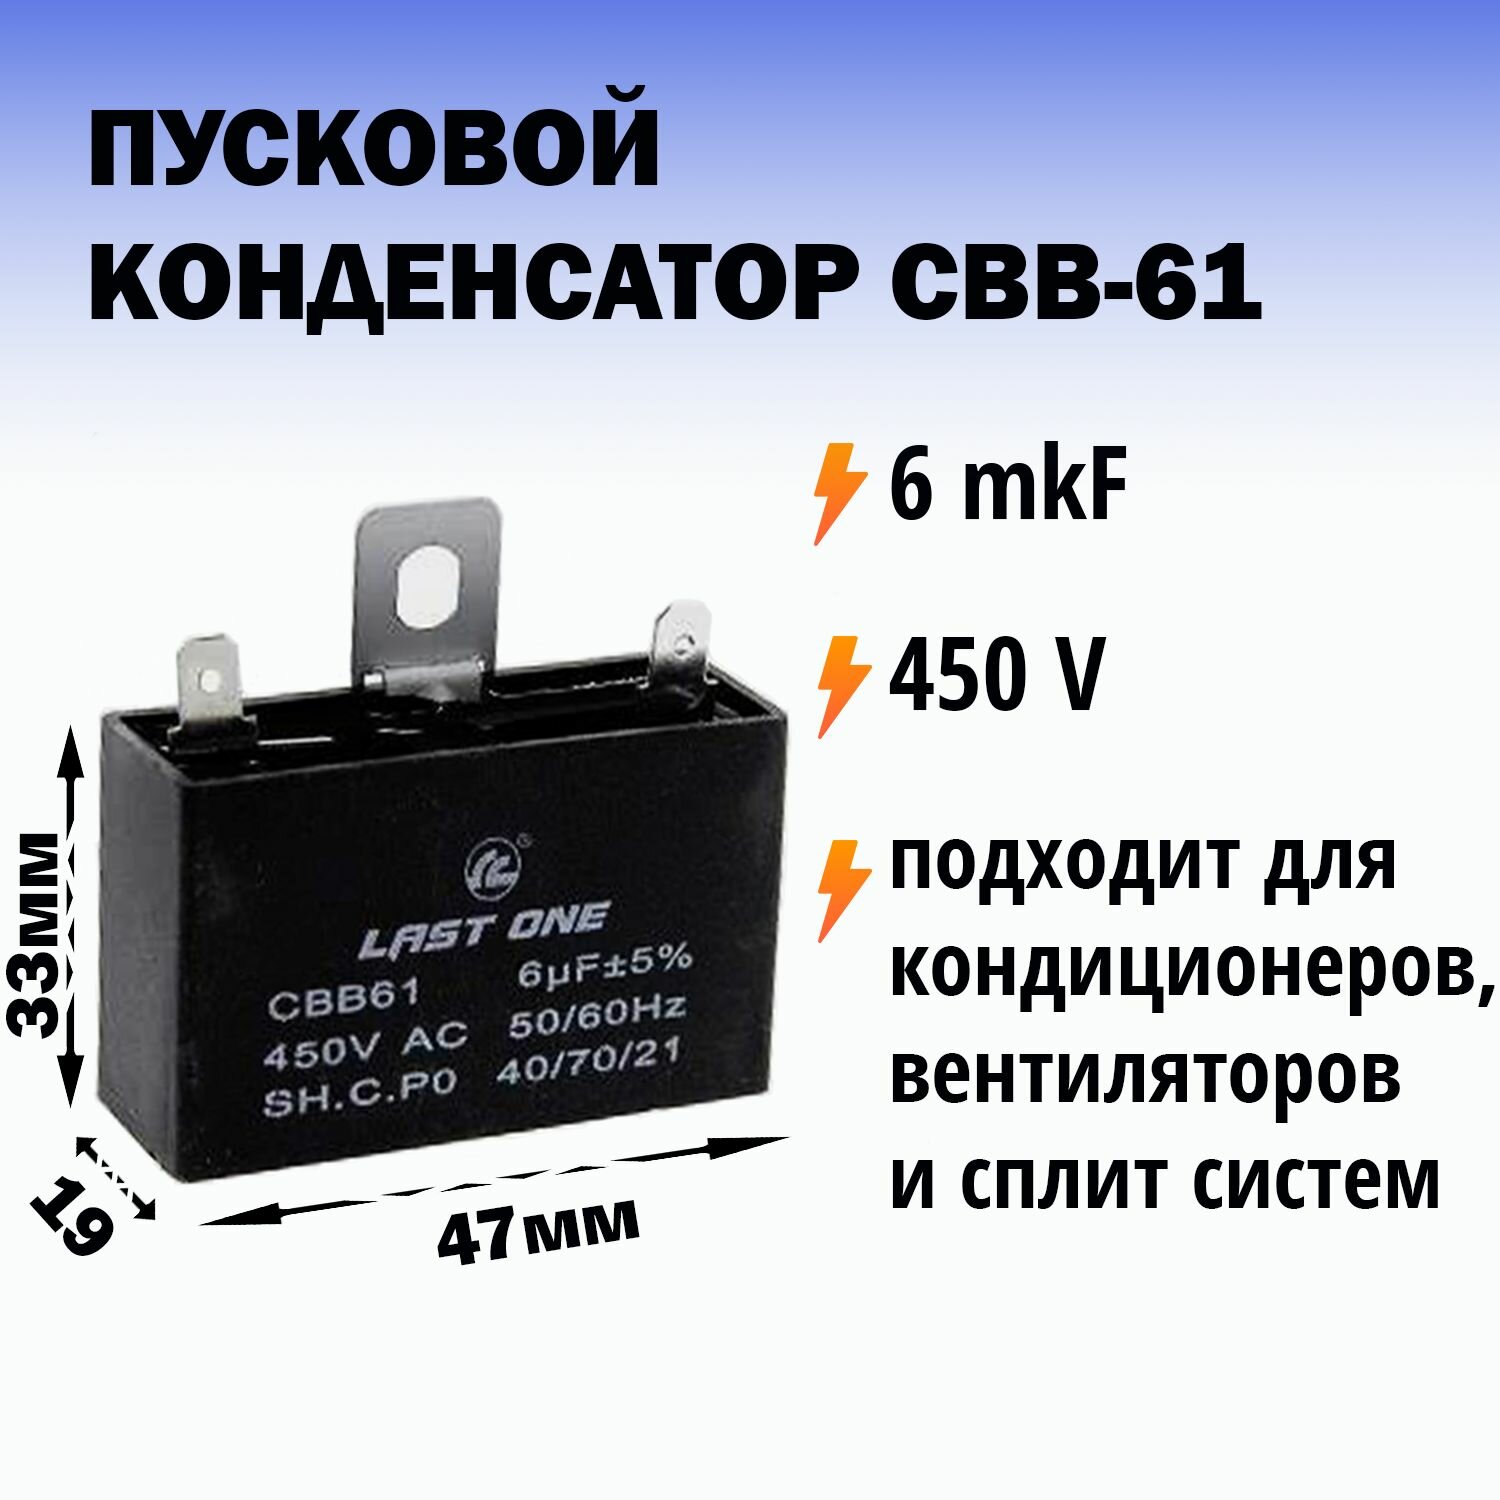 Пусковой конденсатор CBB61 6мкф / 450В для сплит систем